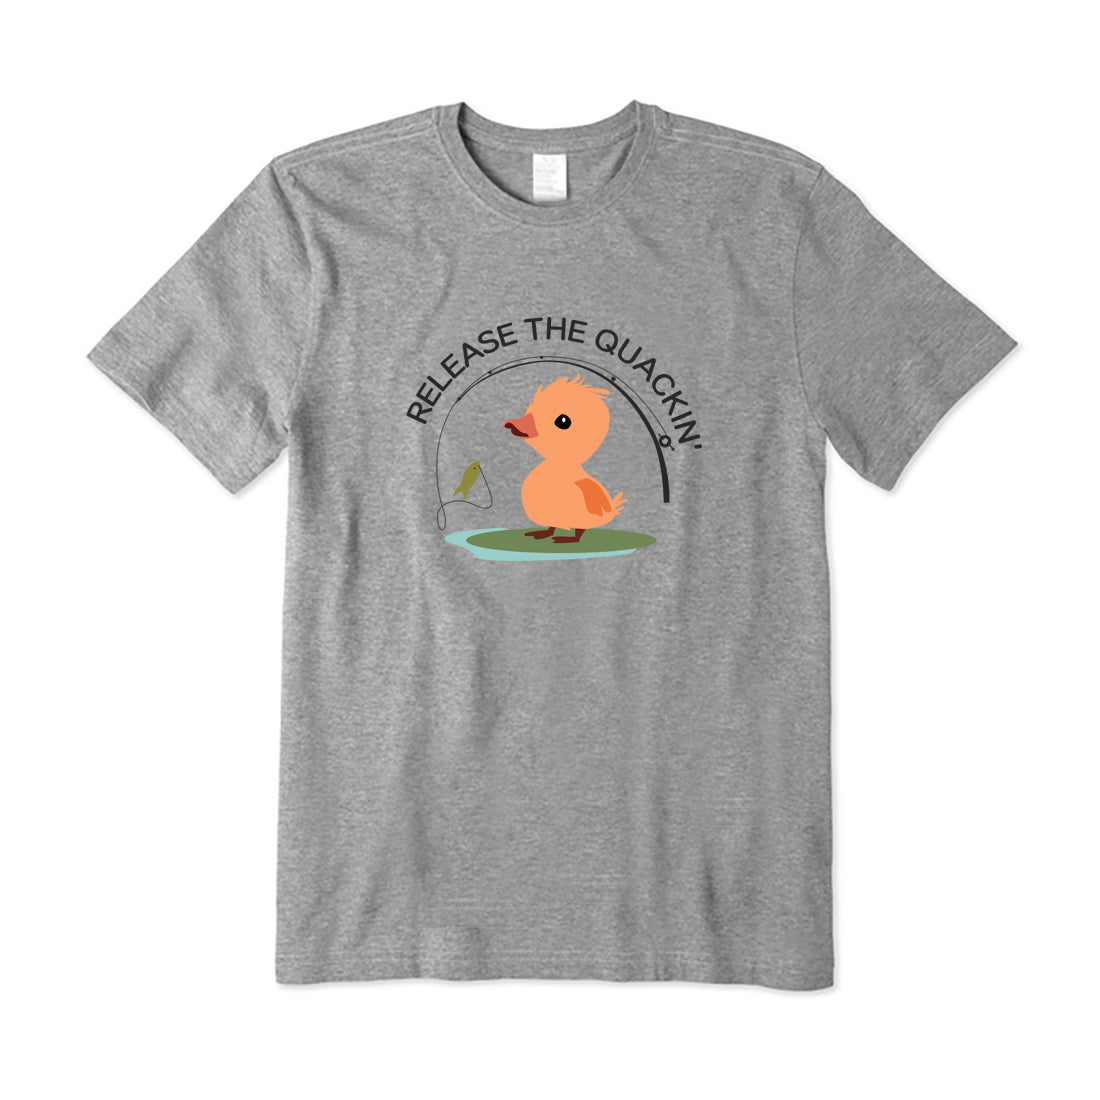 Release The Quackin' T-Shirt